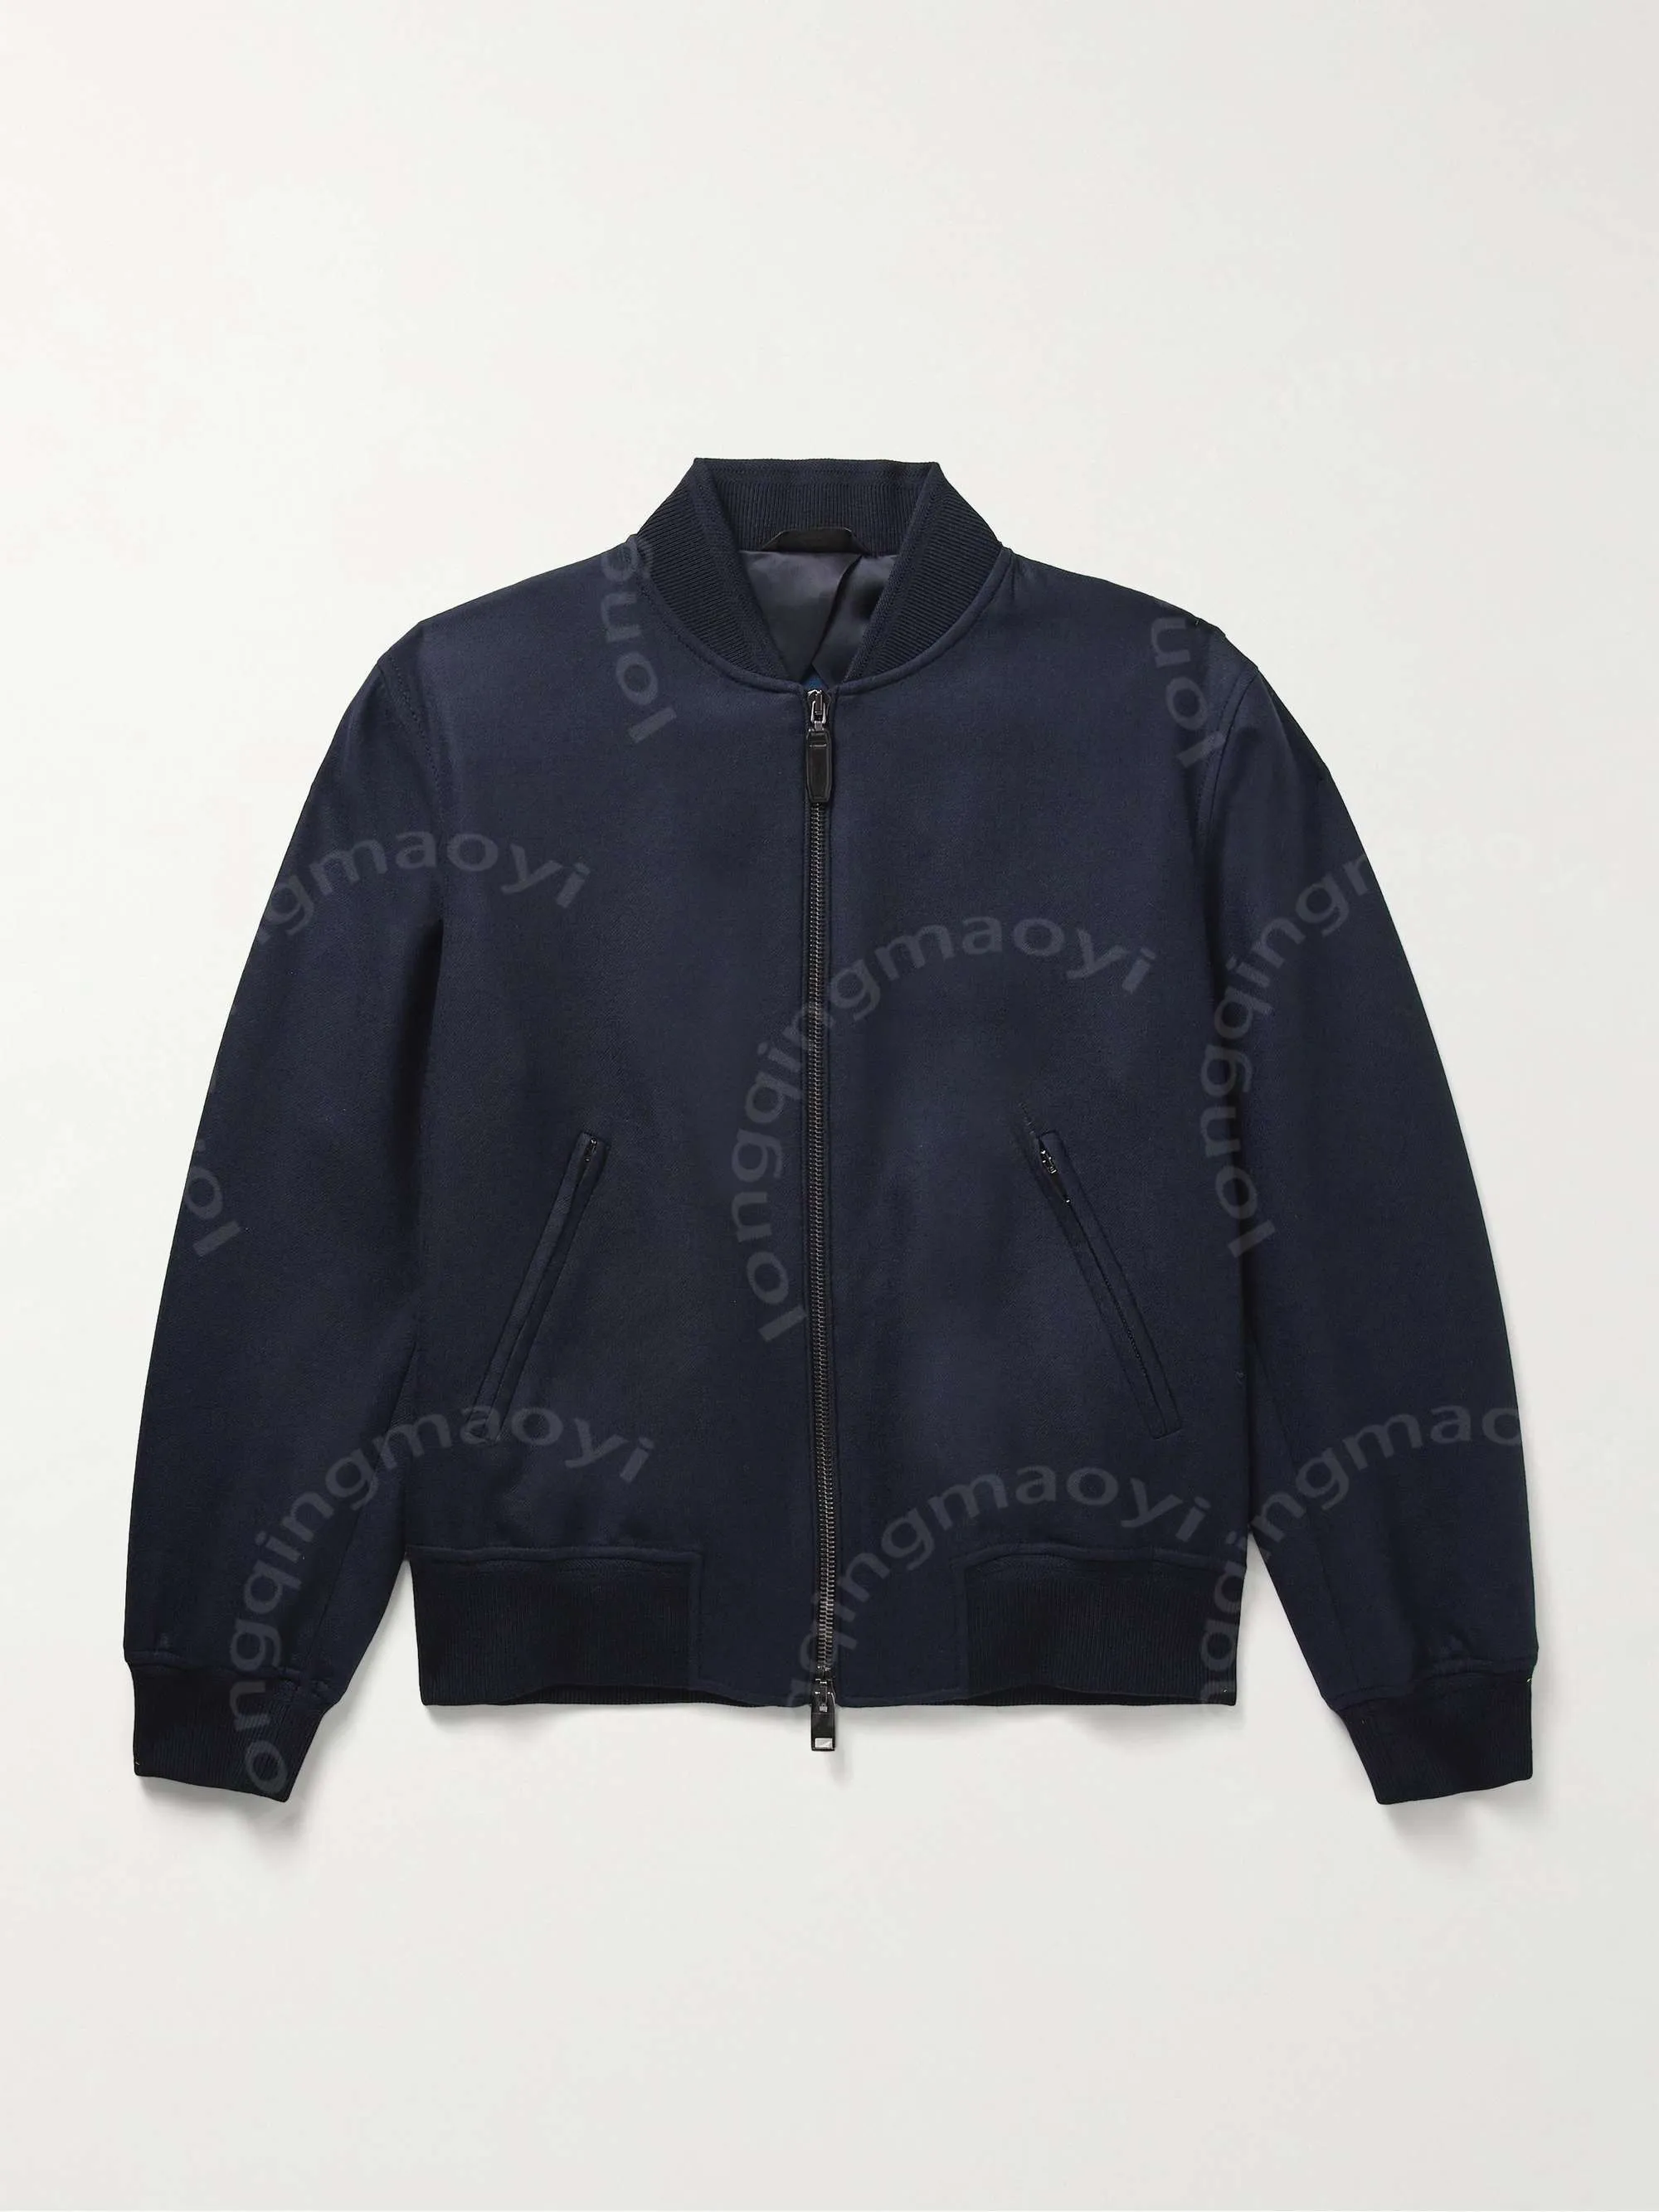 디자이너 남자 재킷 Brioni 양모와 실크 블렌드 트라이 폭포버 재킷 외부웨어의 옷 긴 소매 재킷 라펠 목 상판